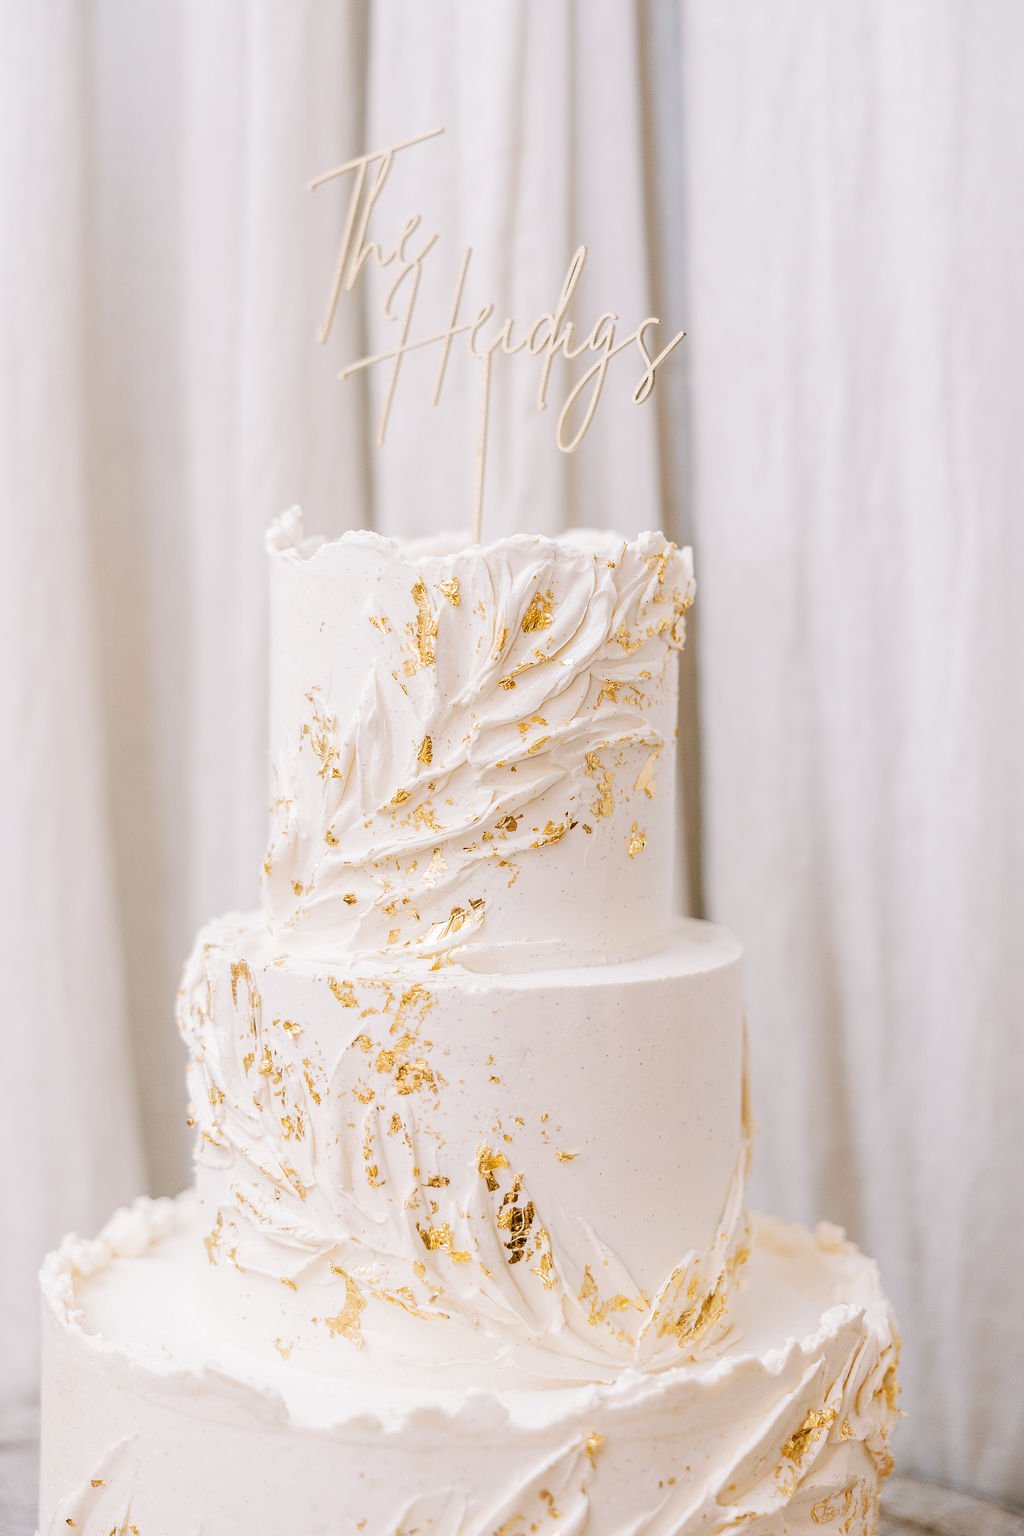 Muslim Wedding Cake - Etsy New Zealand